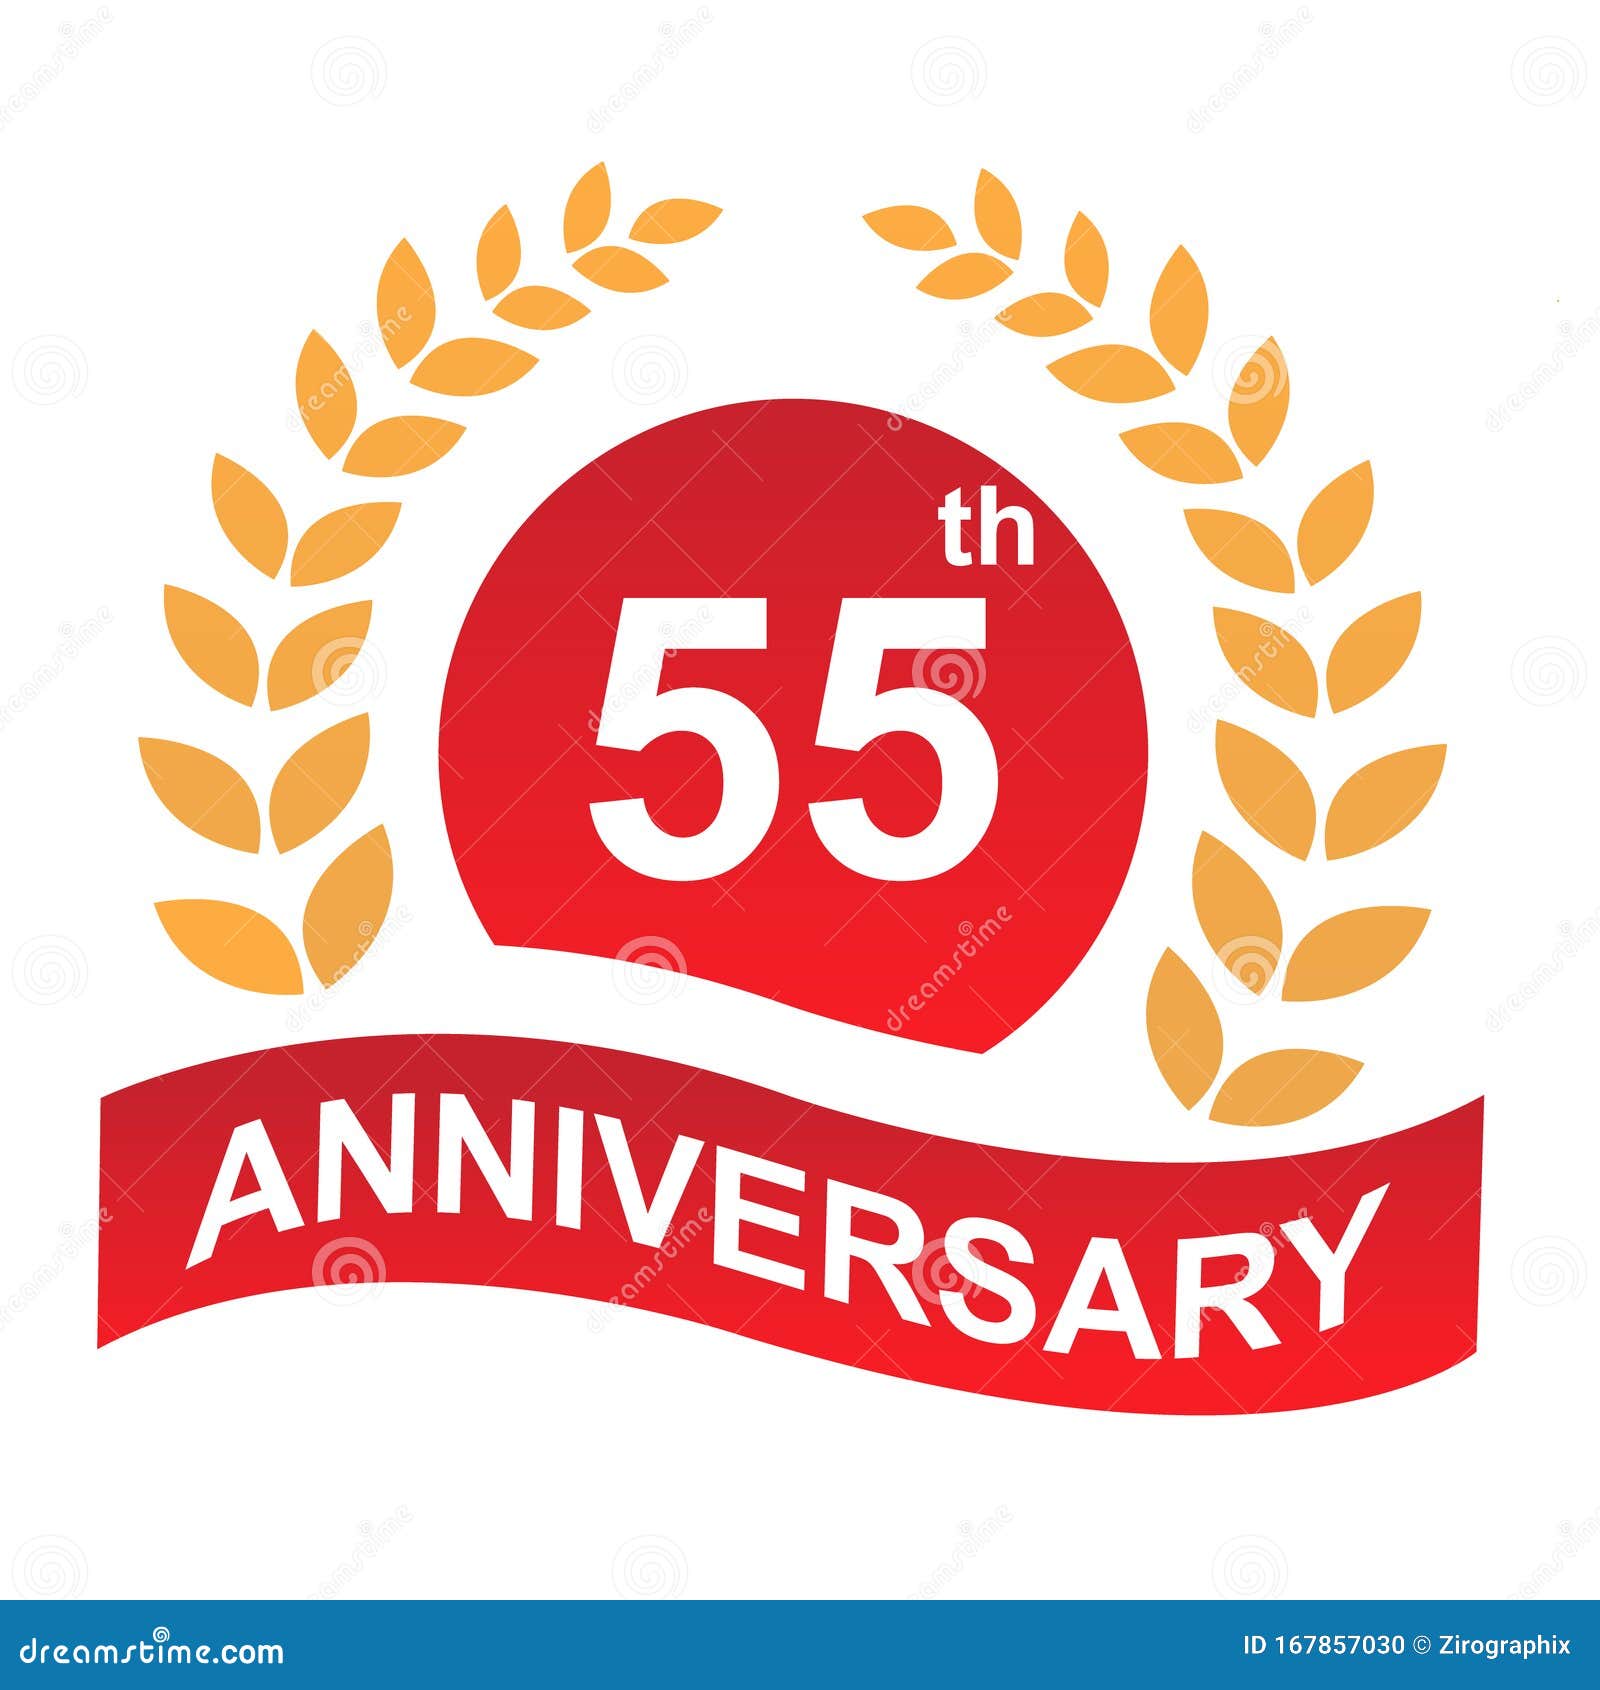 55th Anniversary Logo Illustration Art Stock Illustration ...